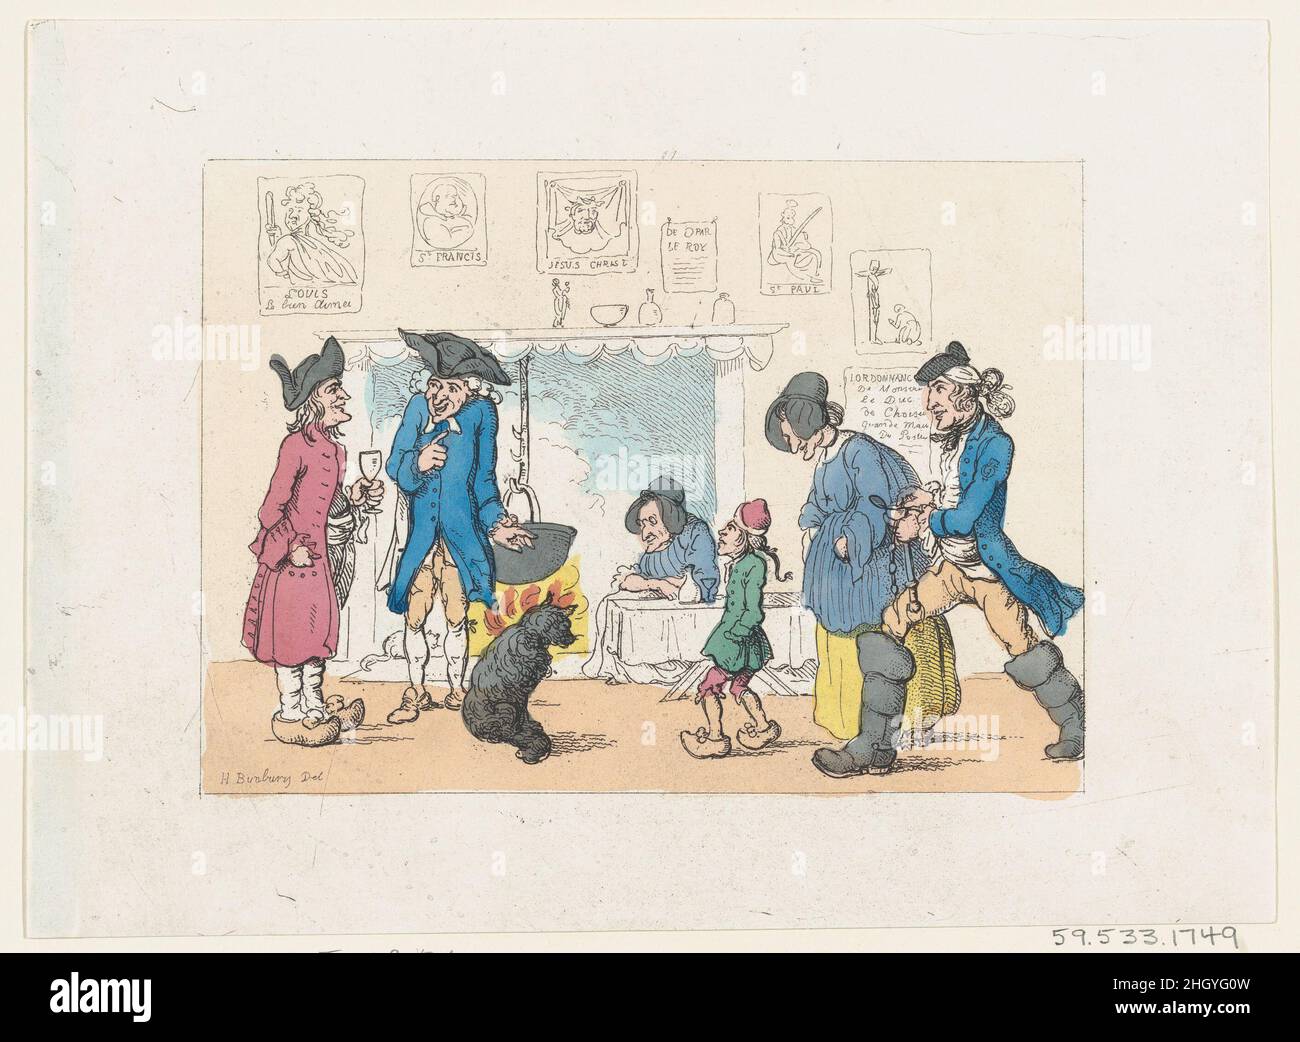 La cuisine d'une poste française 1803 (?)(?)Thomas Rowlandson Bunbury a voyagé à travers la France et l'Italie en 1769, et a produit une série de dessins humoristiques qui se moquait des étrangers.Il a montré « la cuisine de la poste » à la Royal Academy en 1770, et John Harris a réalisé une gravure connexe en 1771.ce dernier imprimé a probablement été gravé par Thomas Rowlandson et publié par Rudolph Ackermann vers 1803 dans le cadre d'un ensemble qui a ravivé les premières créations de Bunbury.Les maisons de poste étaient des auberges situées à intervalles réguliers le long de routes très fréquentées pour offrir des logements, des rafraîchissements, et des chevaux à louer.Les passagers de poste ont compté sur t Banque D'Images